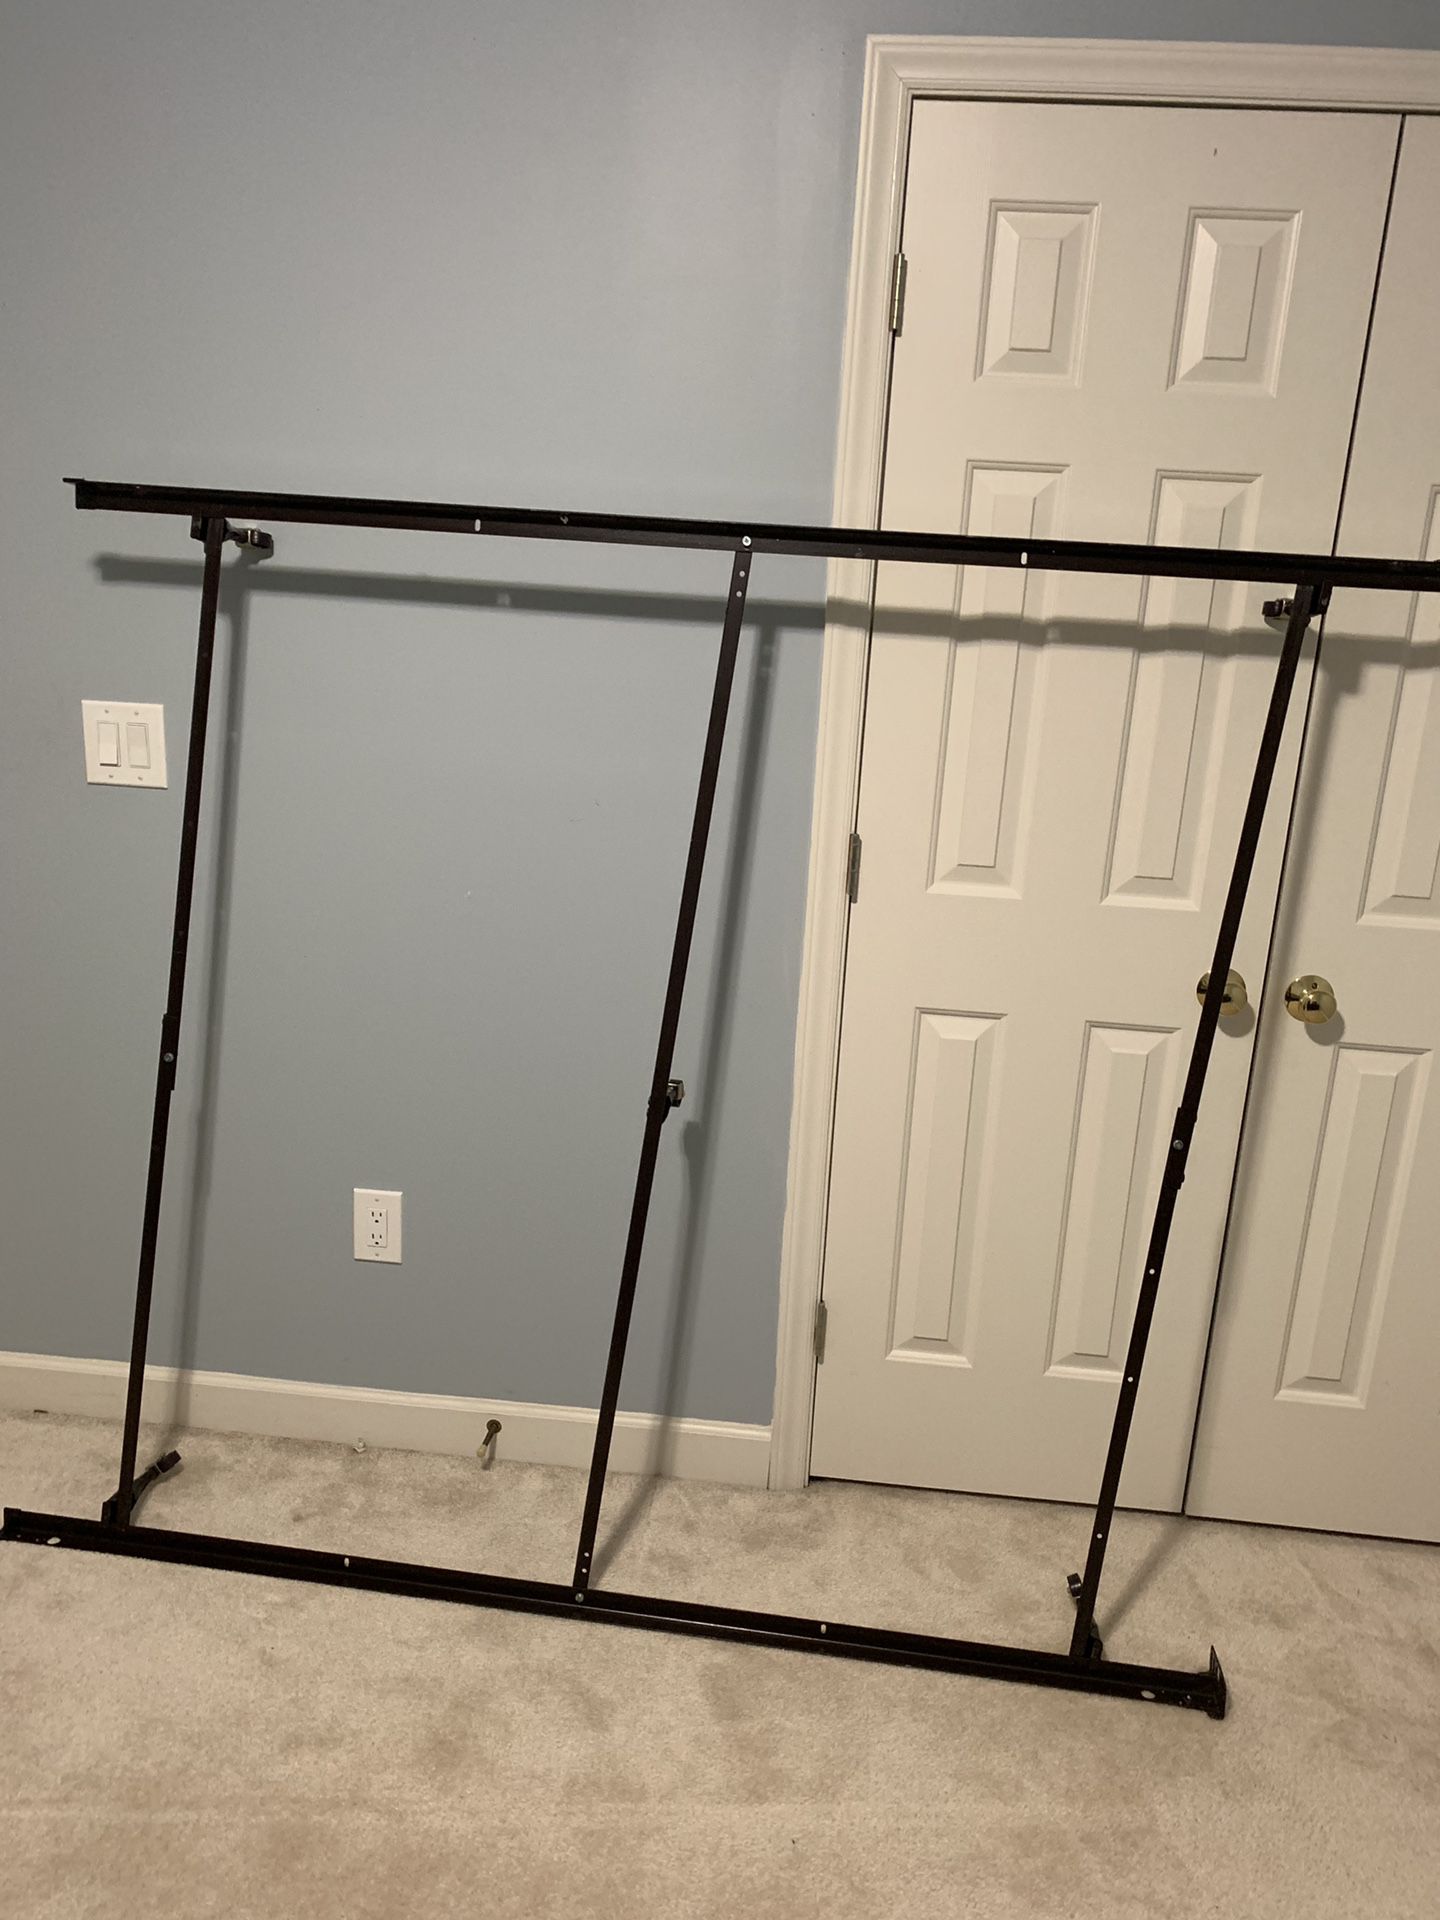 Metal bed frame - adjustable